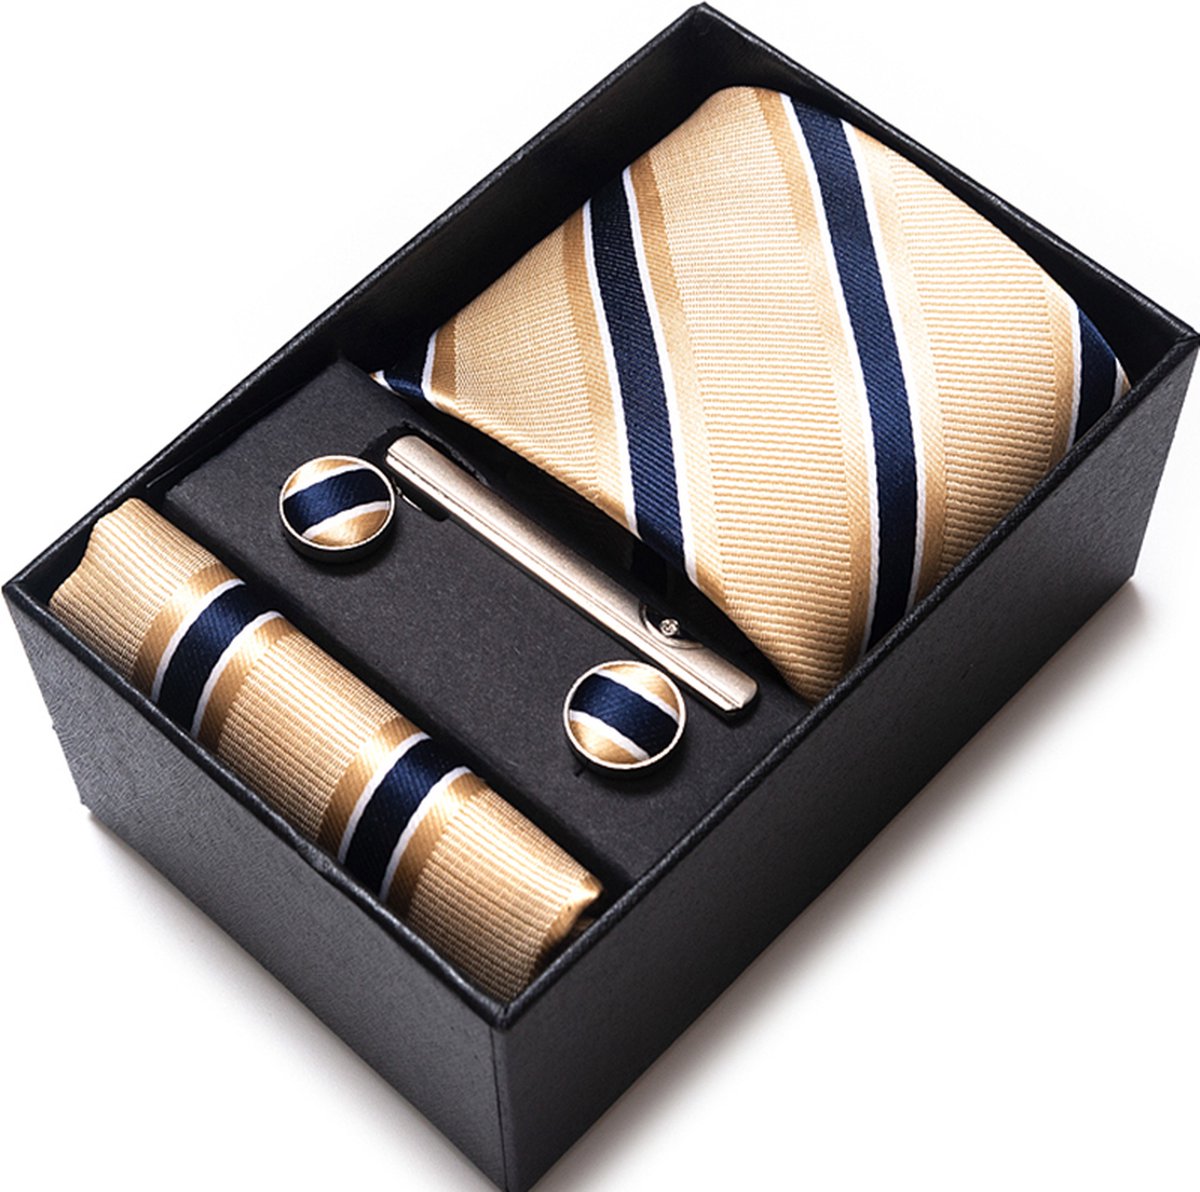 Stropdas set met pochet GOUD met blauw - Das inclusief pochet, manchetknopen en dasspeld - Zeer luxe kwaliteit - Cadeau - Verschillende kleuren